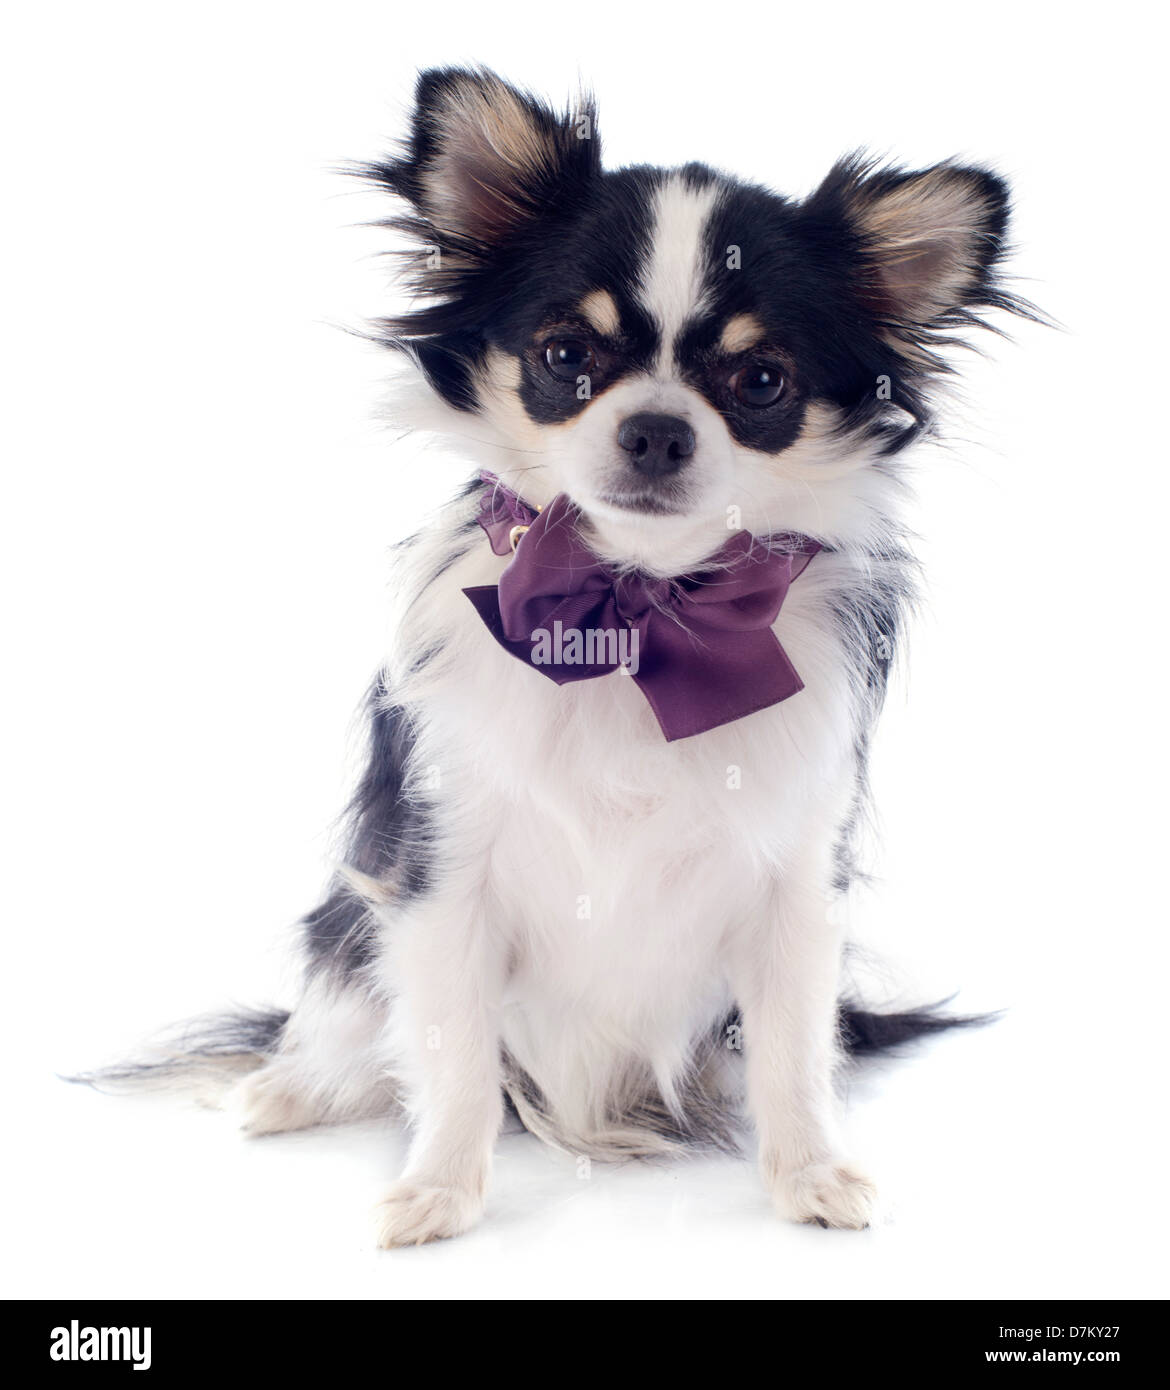 Ritratto di un grazioso cucciolo di razza chihuahua davanti a uno sfondo bianco Foto Stock